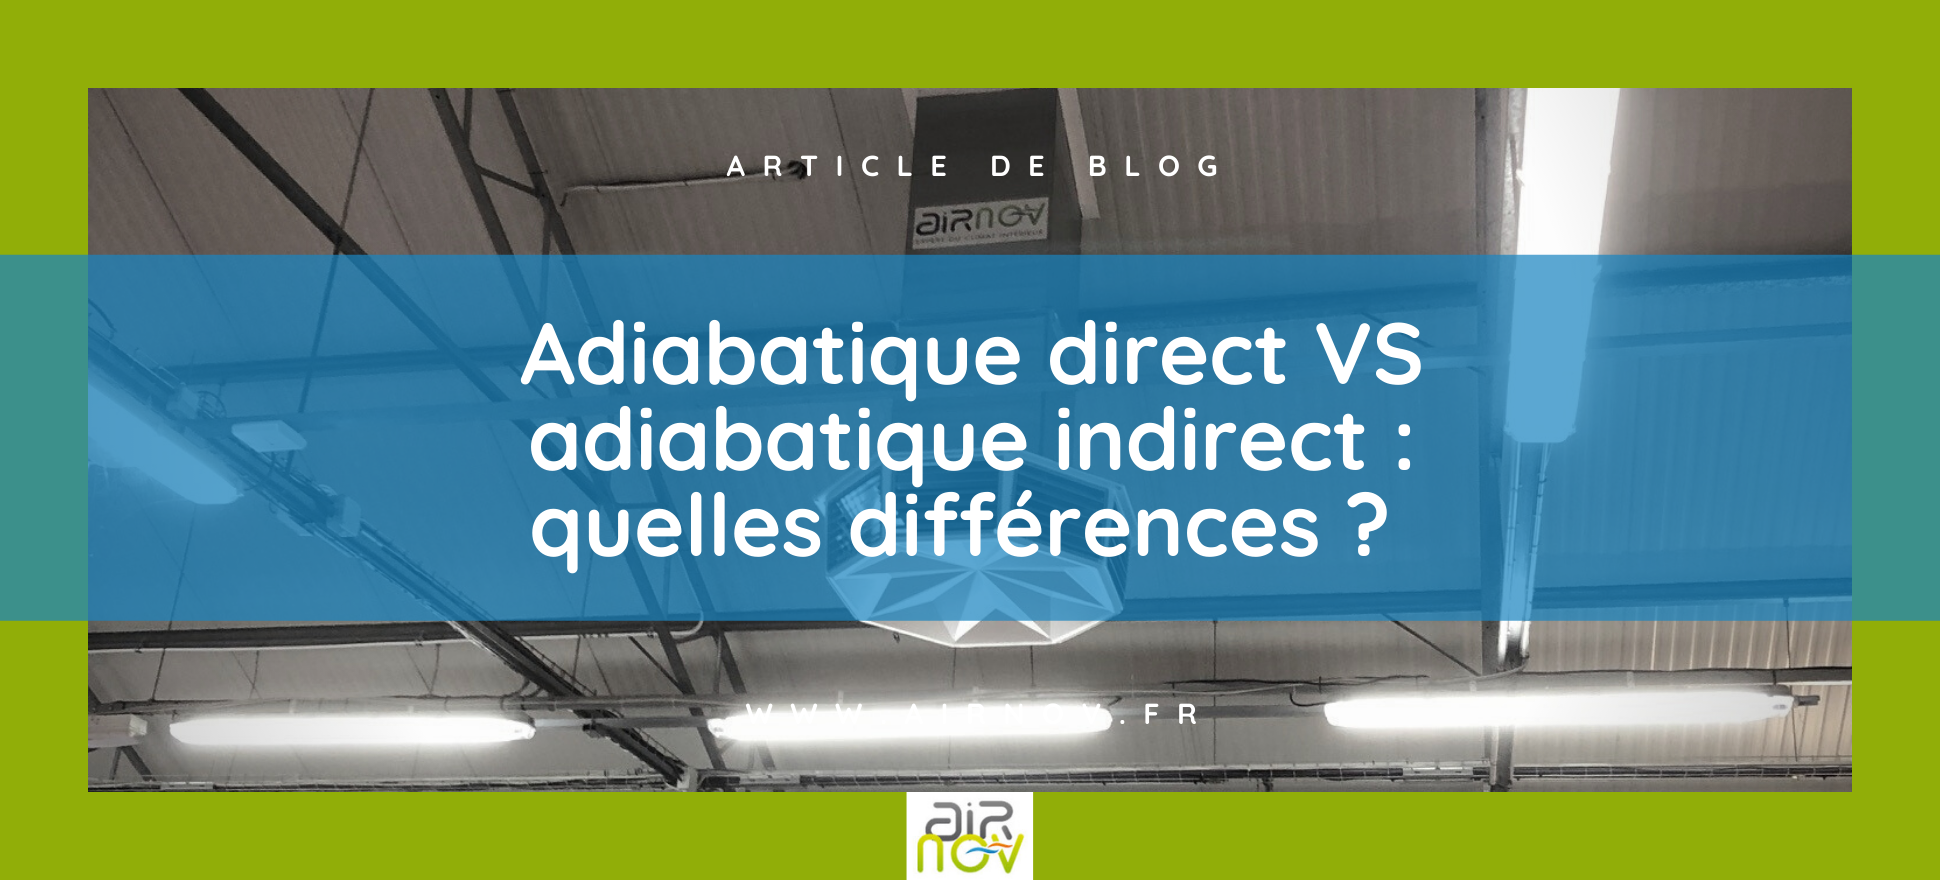 Adiabatique direct VS adiabatique indirect quelles différences 